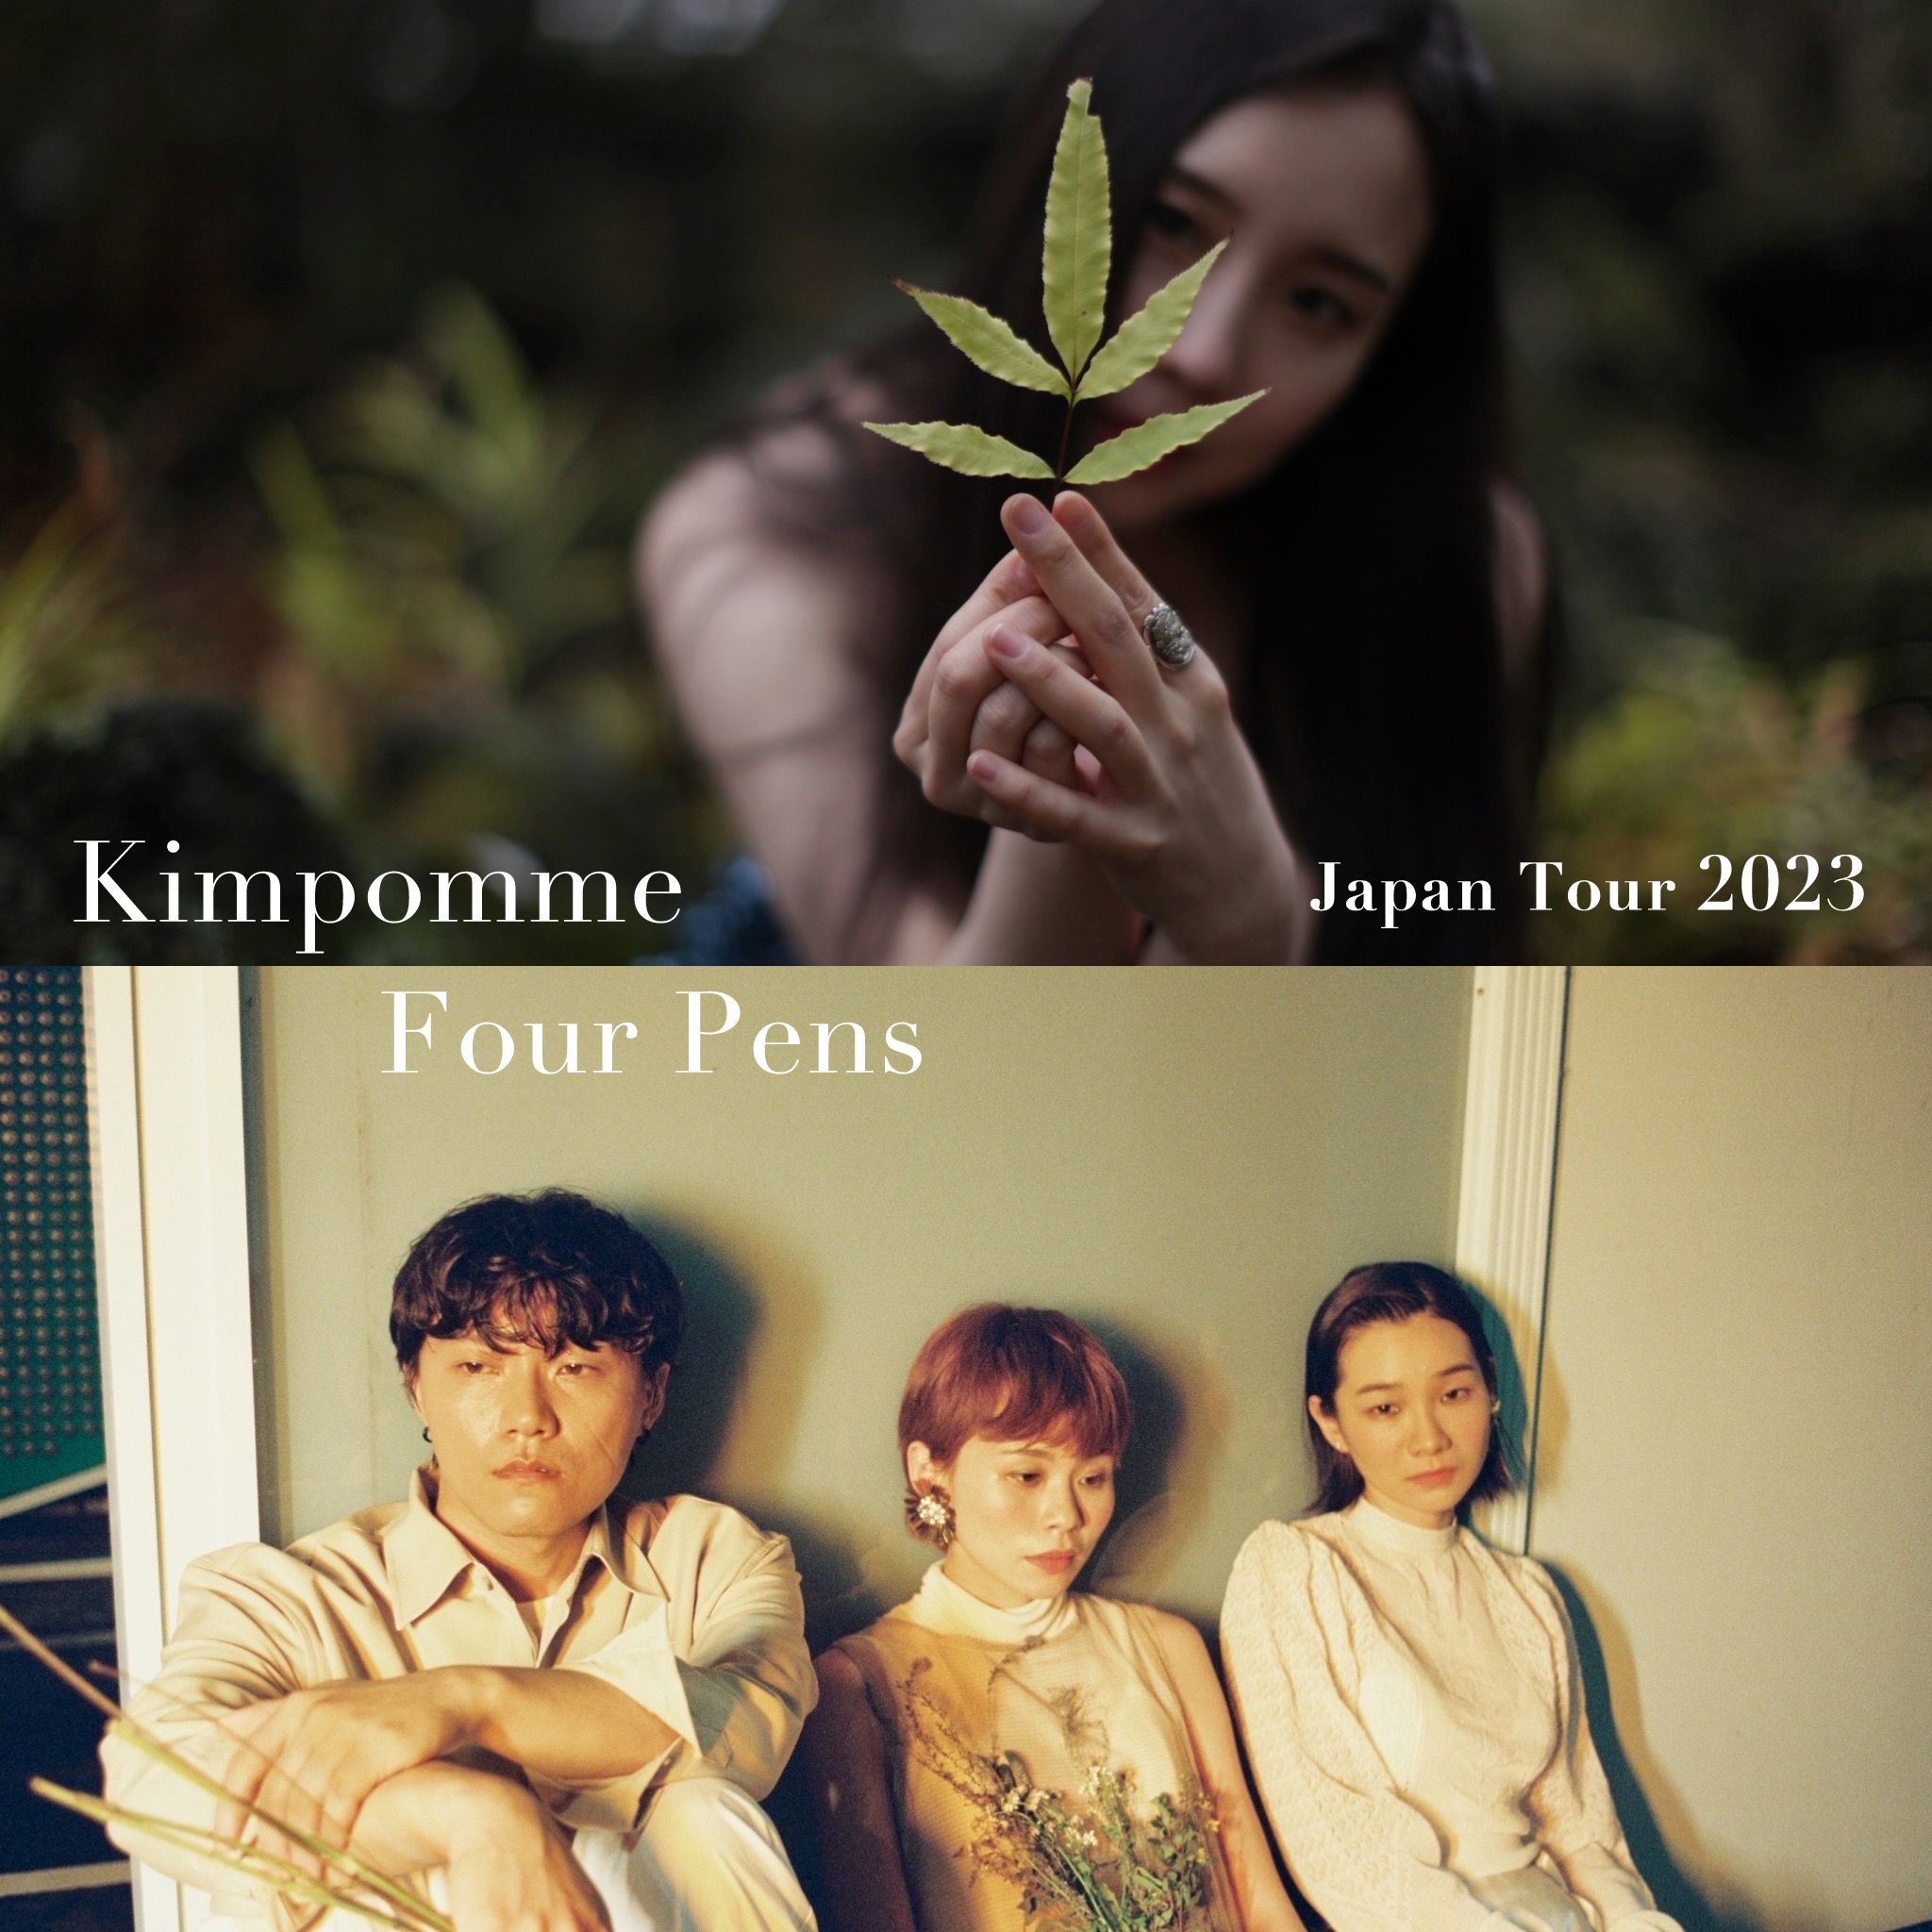 Kimpomme x Four Pens Japan Tour 2023